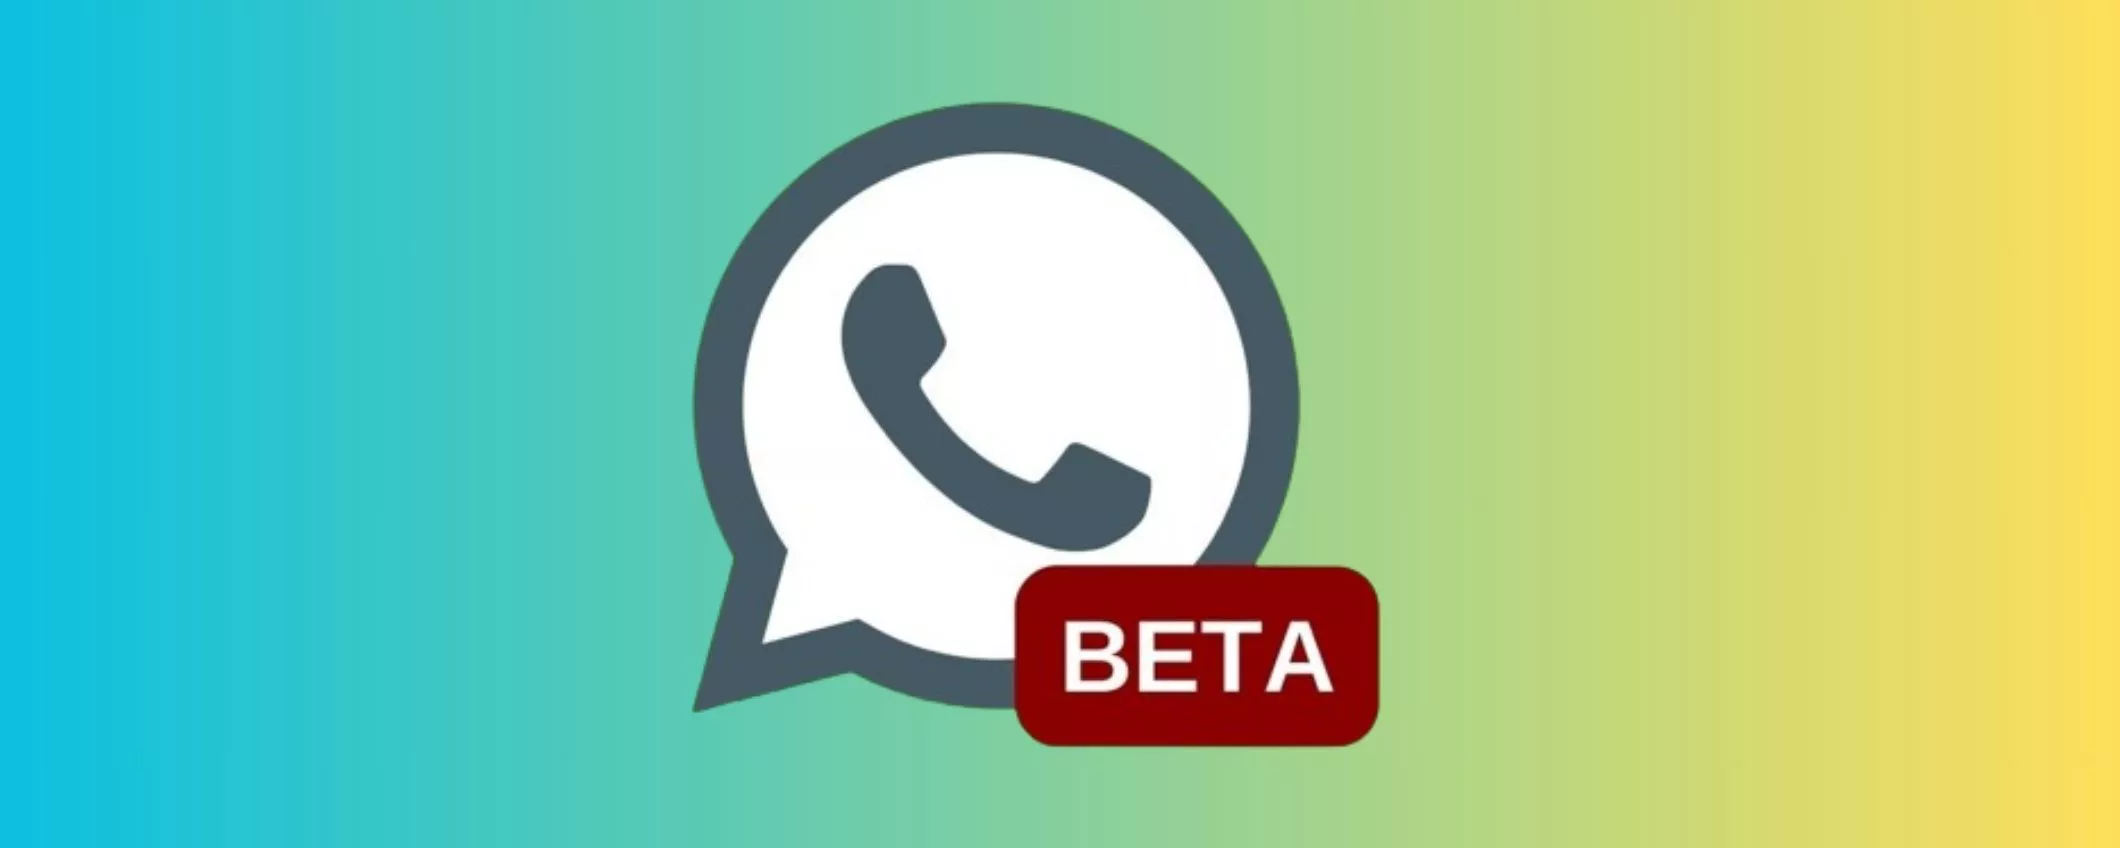 WhatsApp beta: più immediato e facile mandare messaggi video